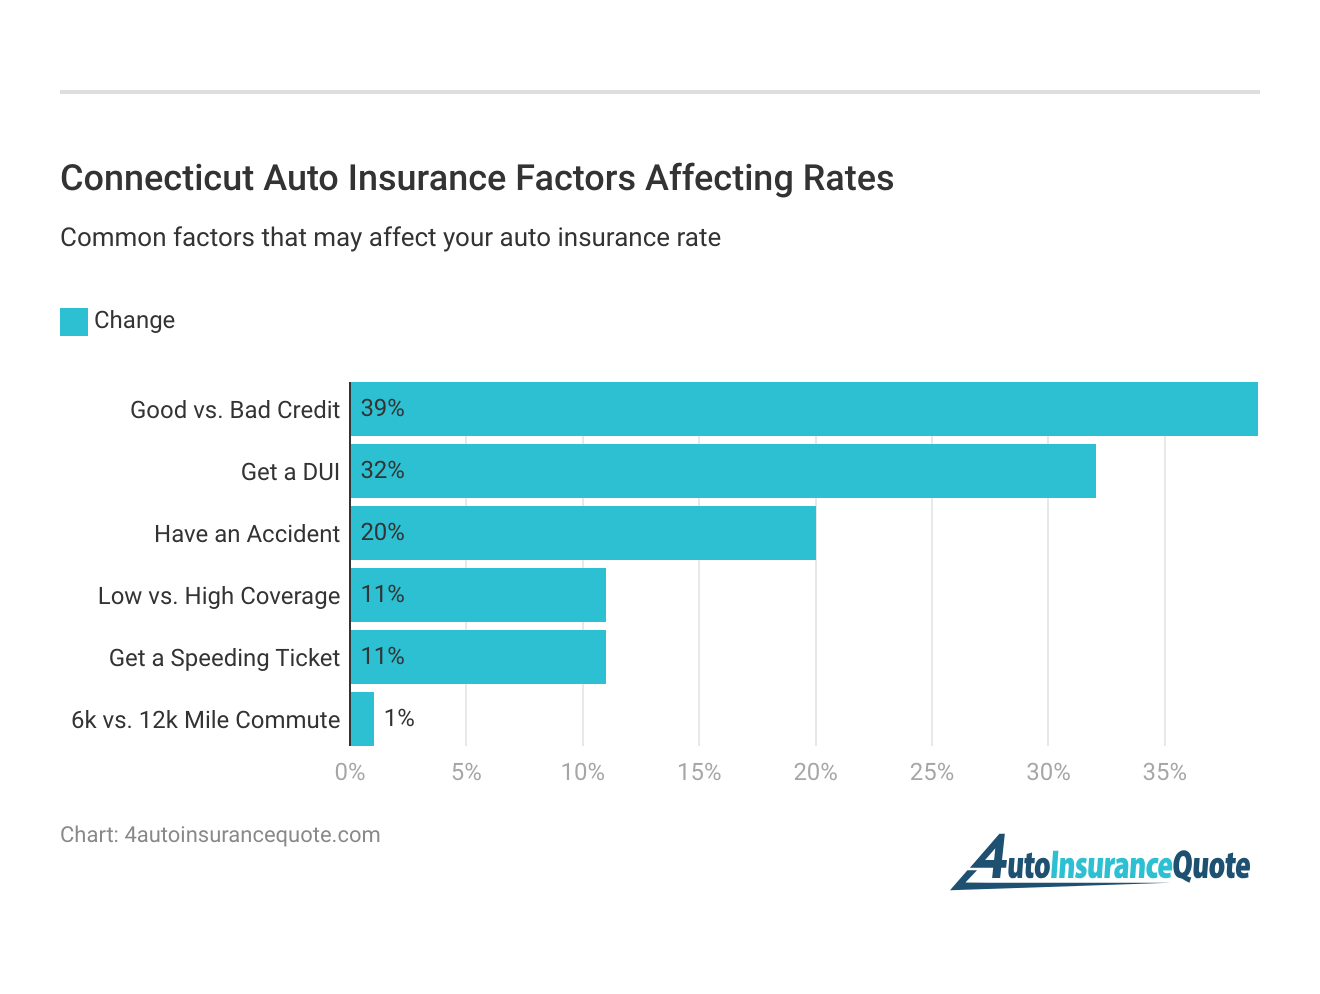 <h3>Connecticut Auto Insurance Factors Affecting Rates</h3>